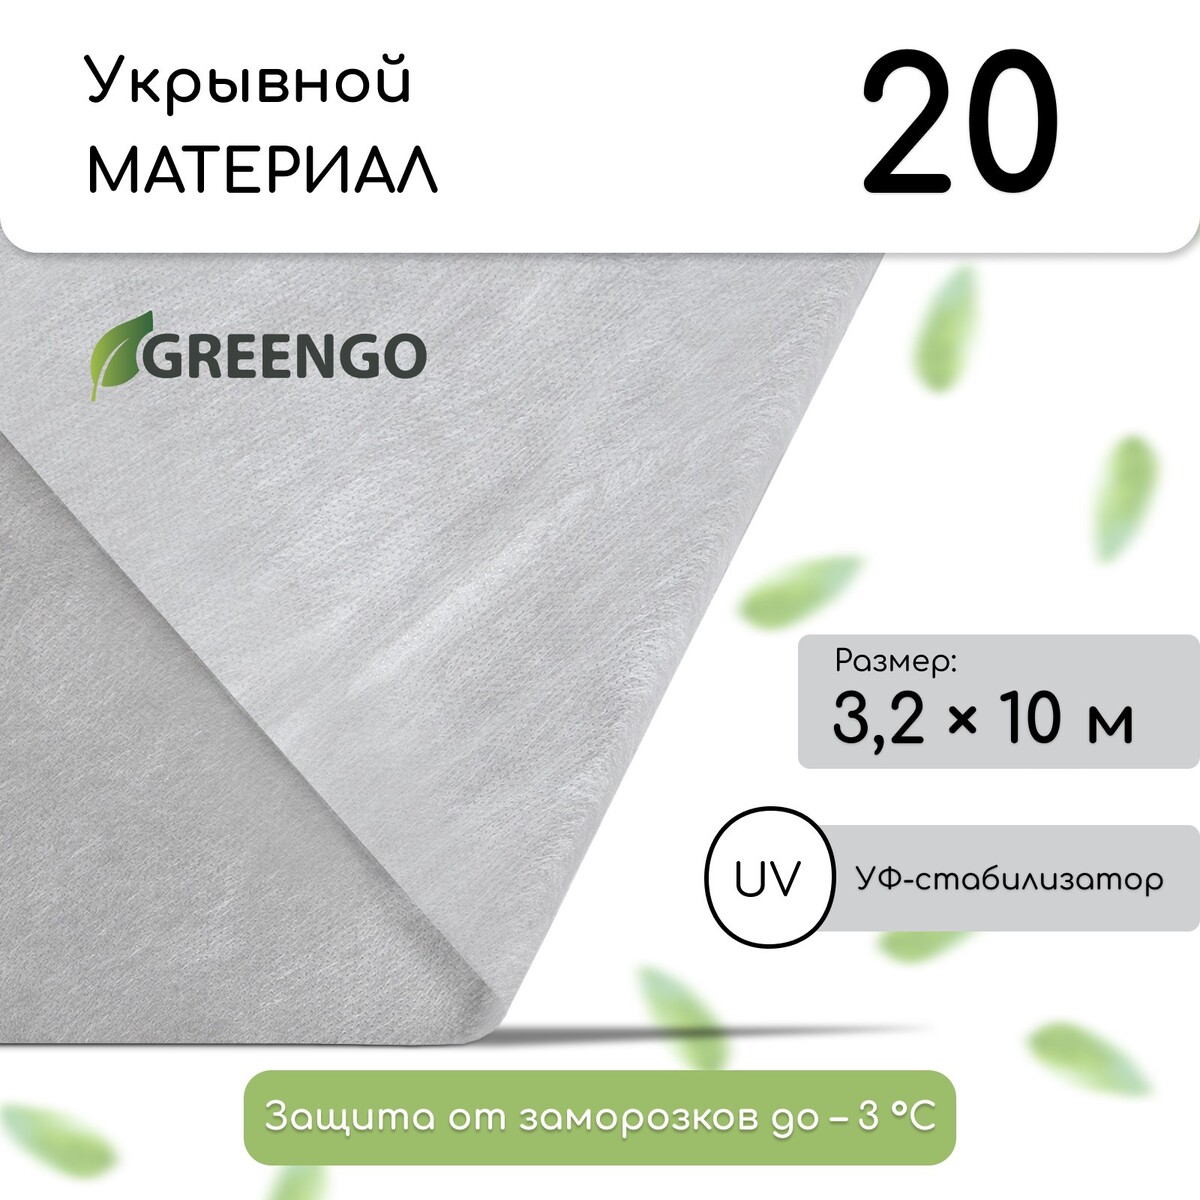 Материал укрывной, 10 × 3.2 м, плотность 20 г/м², с уф-стабилизатором, белый, greengo, эконом 30%